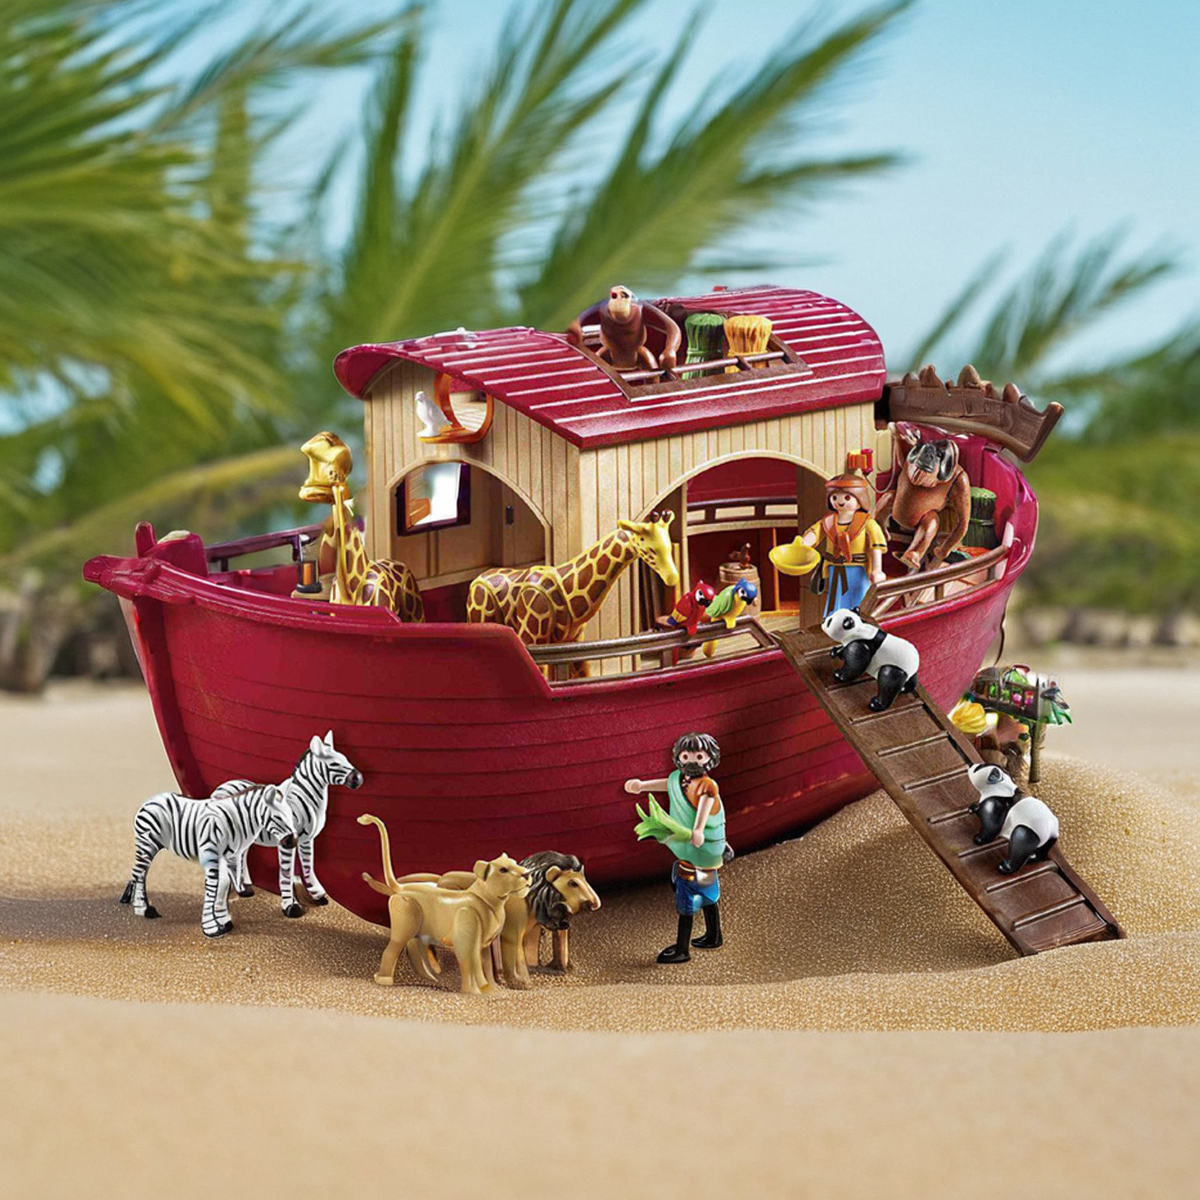 德国摩比世界诺亚方舟Playmobil9373/6765野生动物儿童玩具大船